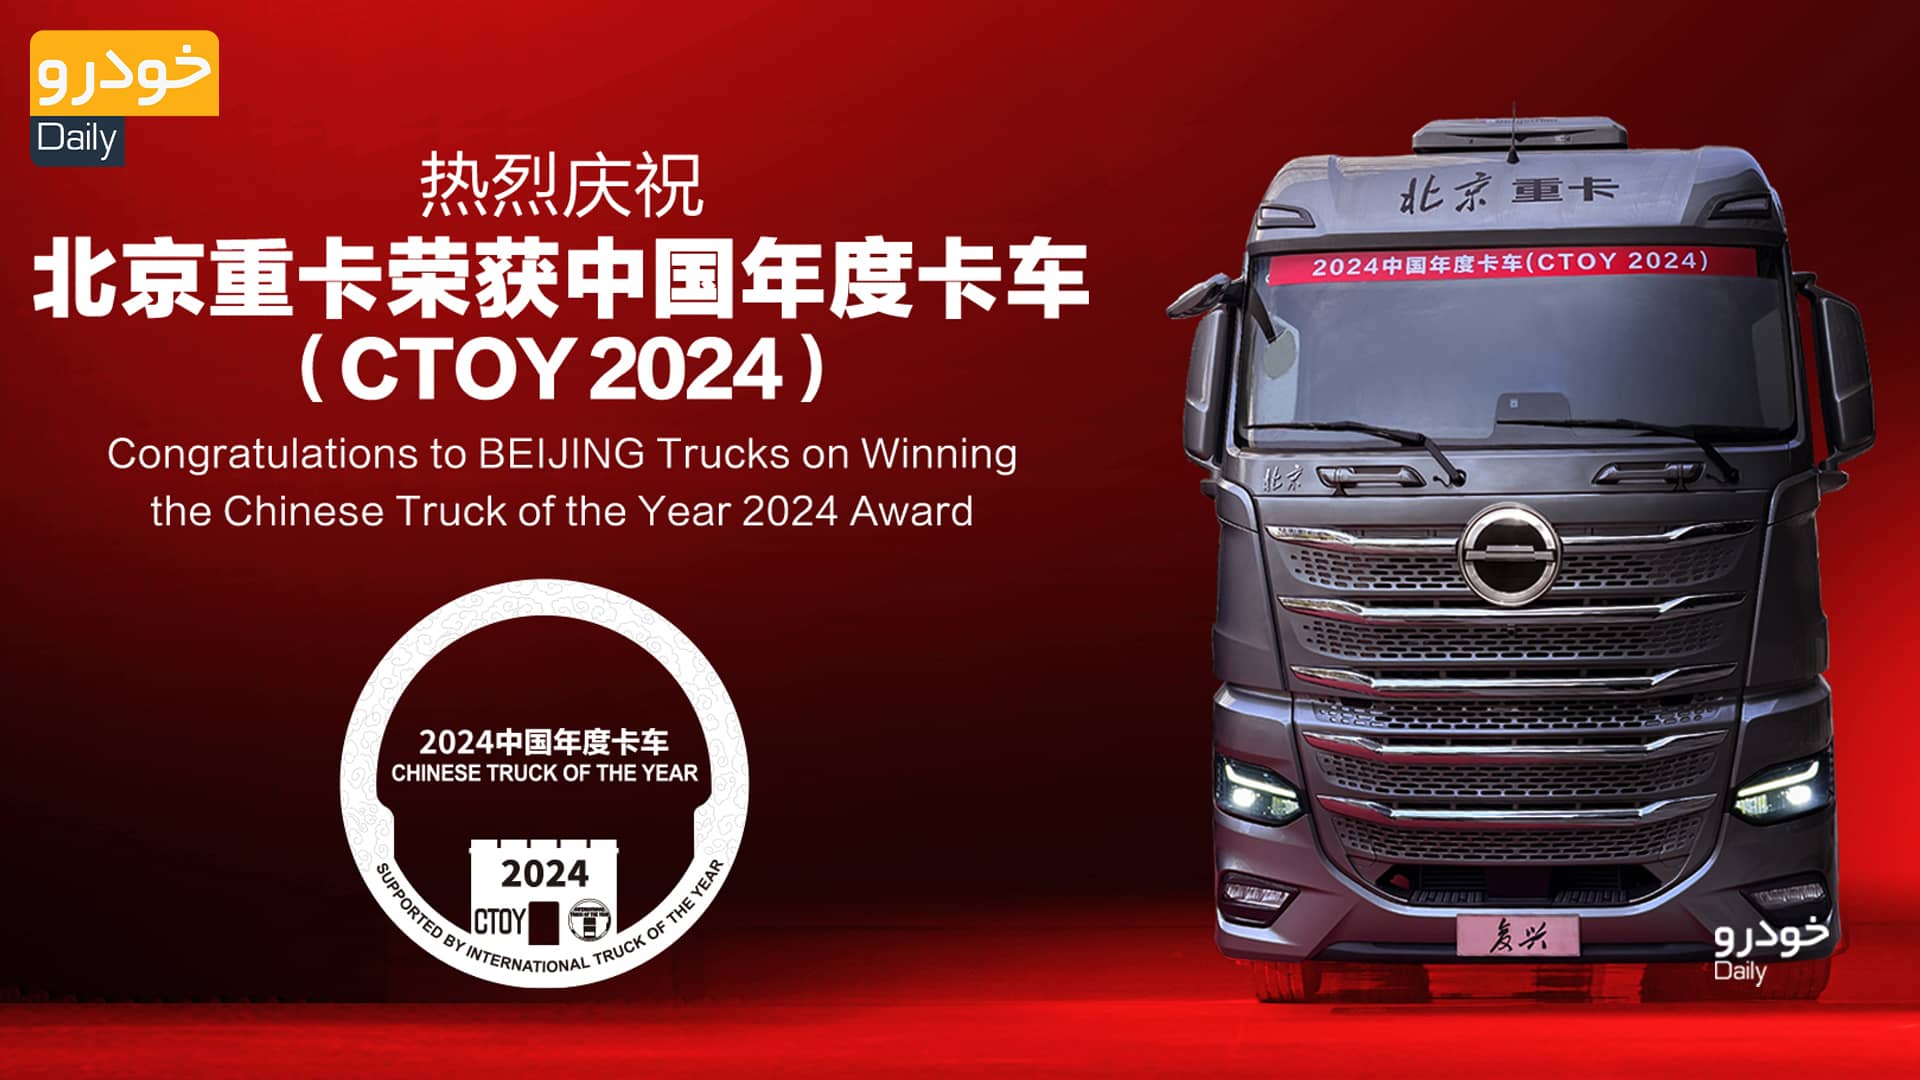 بایک X9، محصول جدید بهمن دیزل، بهترین کامیون کشنده سال چین شناخته شد